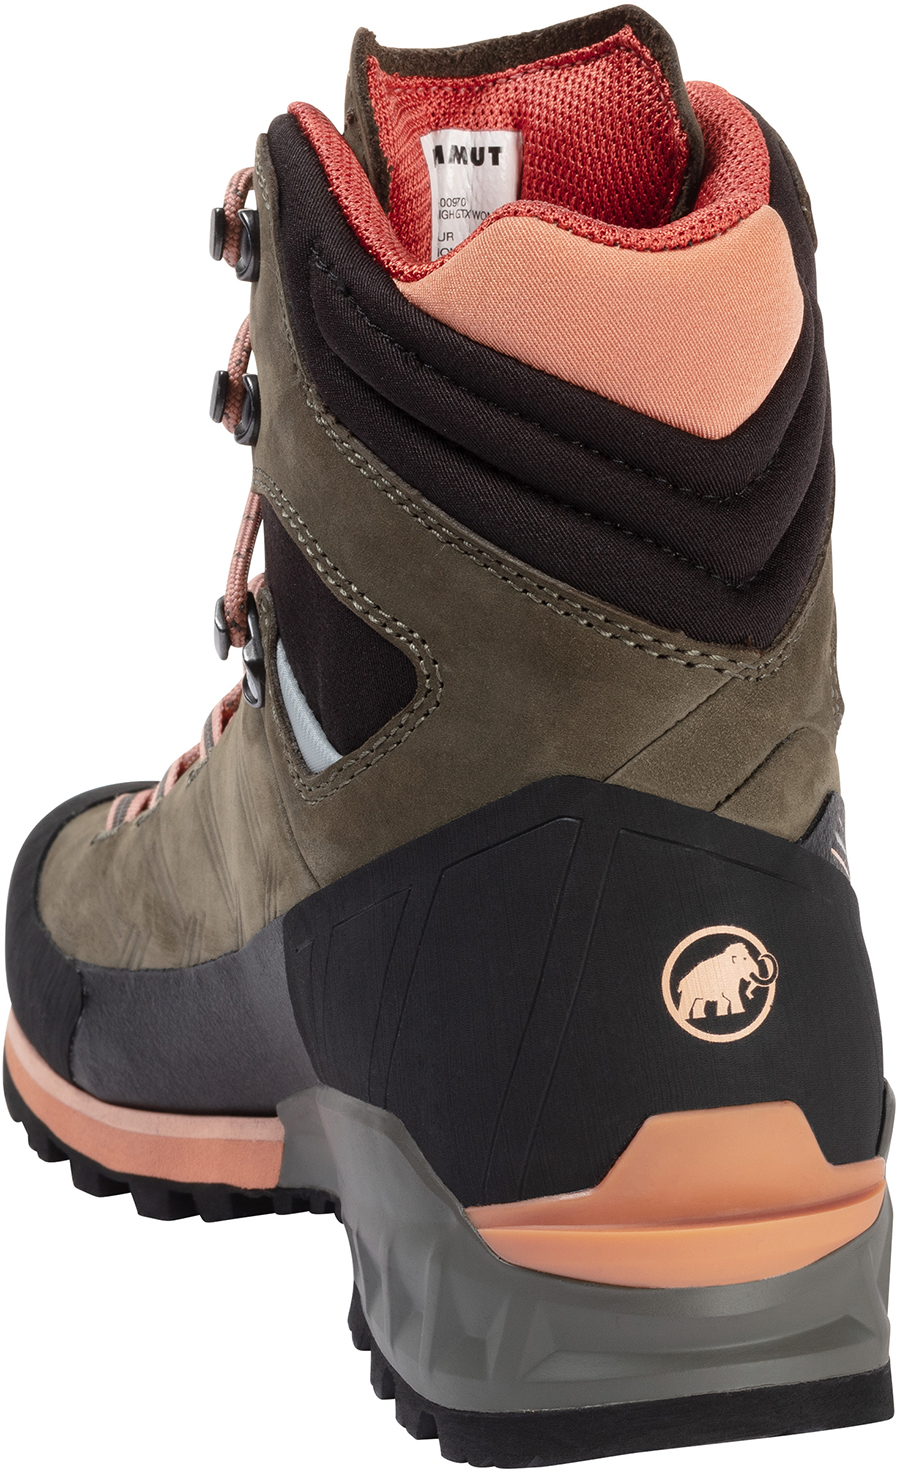 Mammut Kento Guide High GTX Women's Hiking Boots